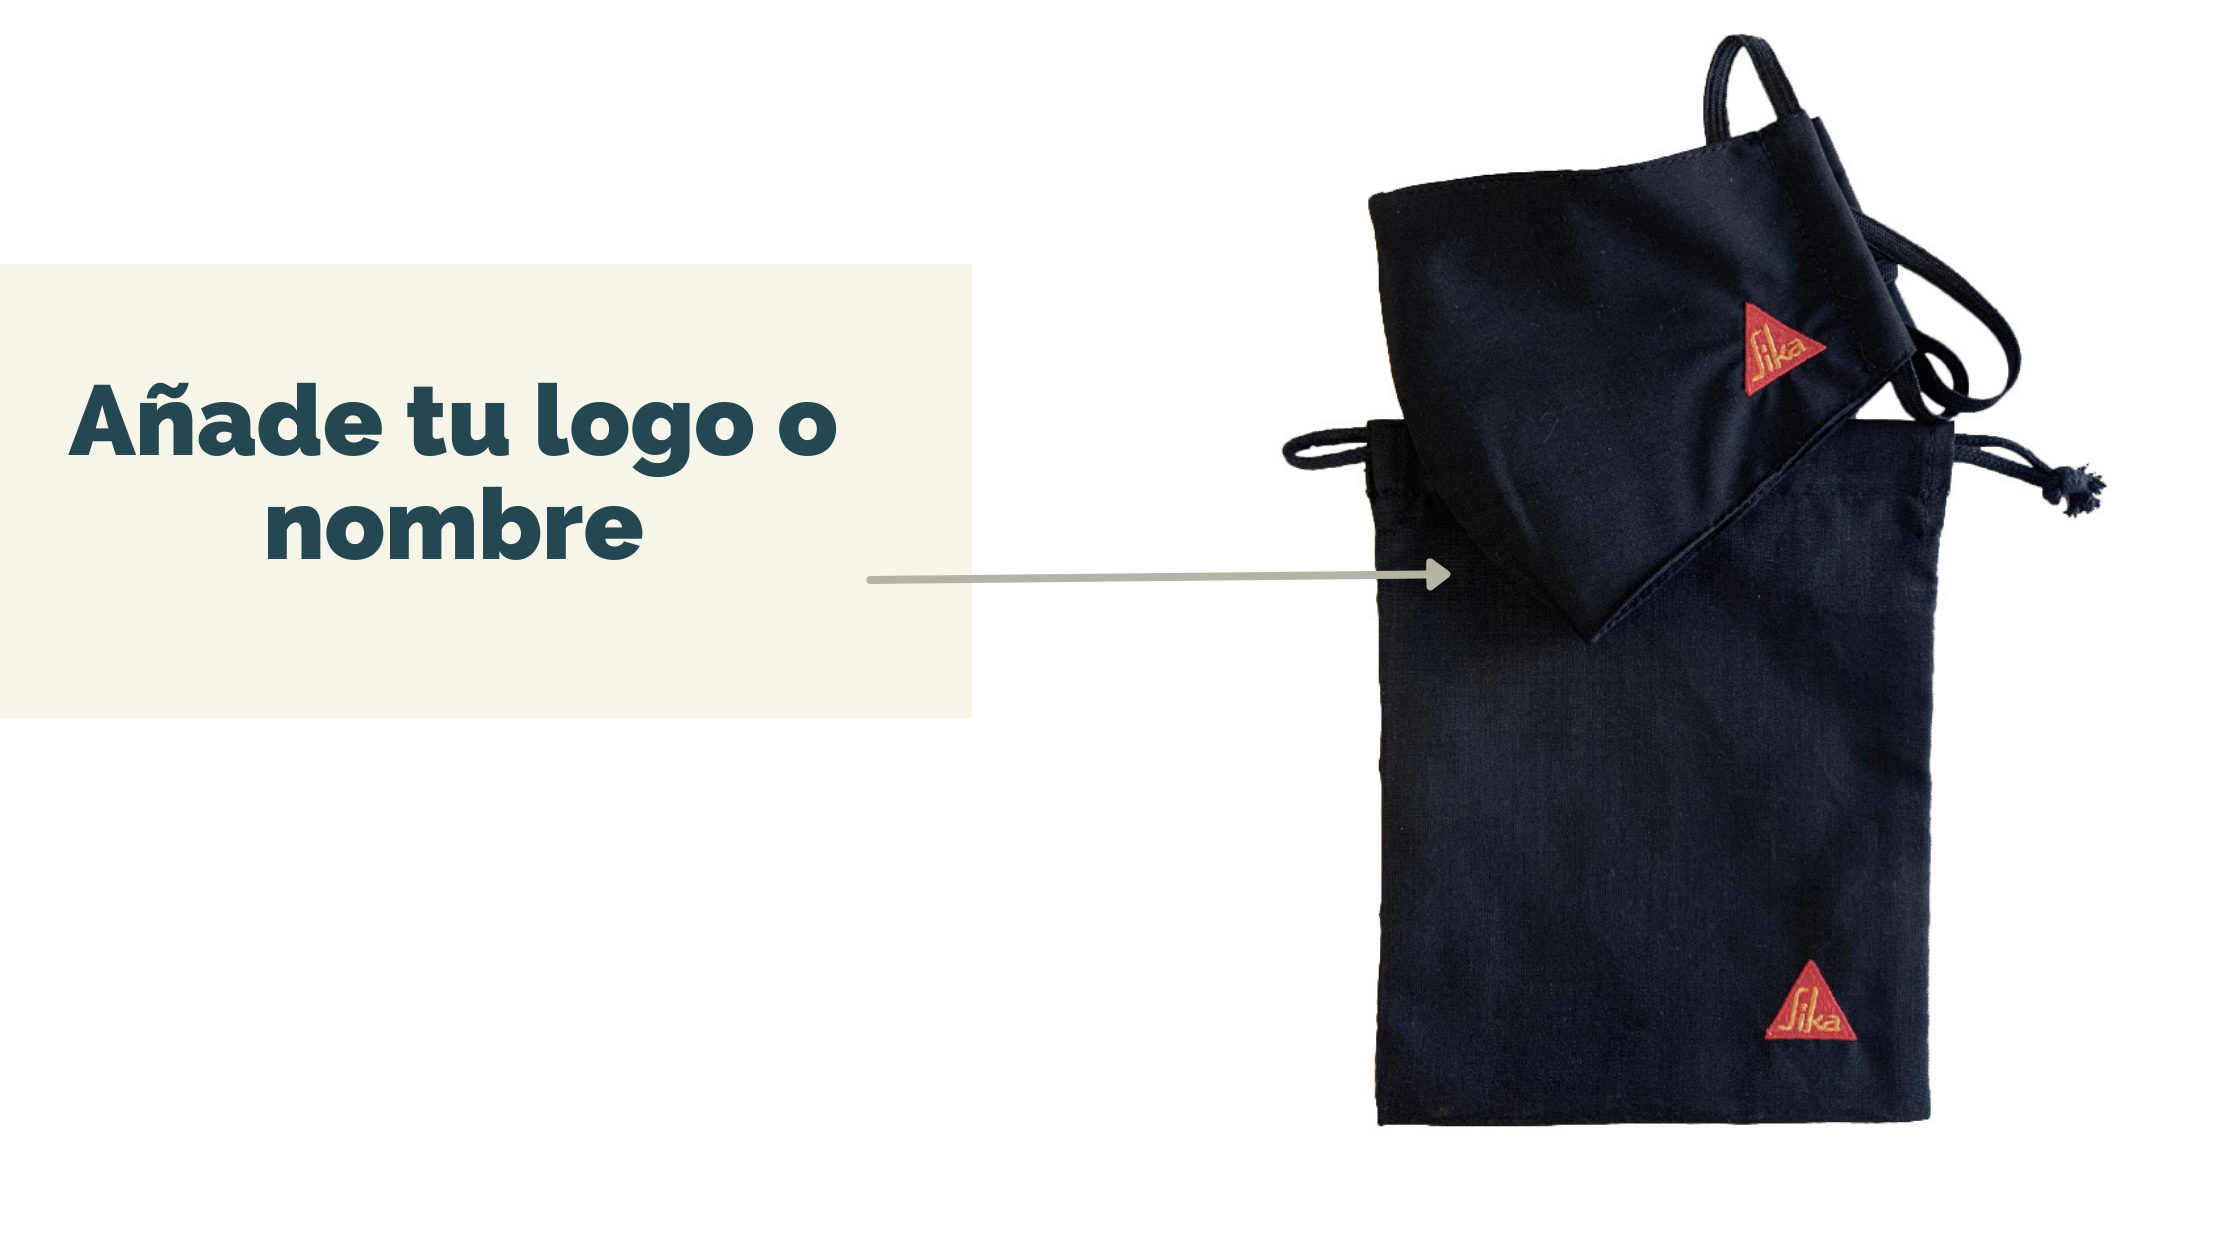 Personaliza la bolsa porta mascarilla de forma fácil en Vittorio Uniformes